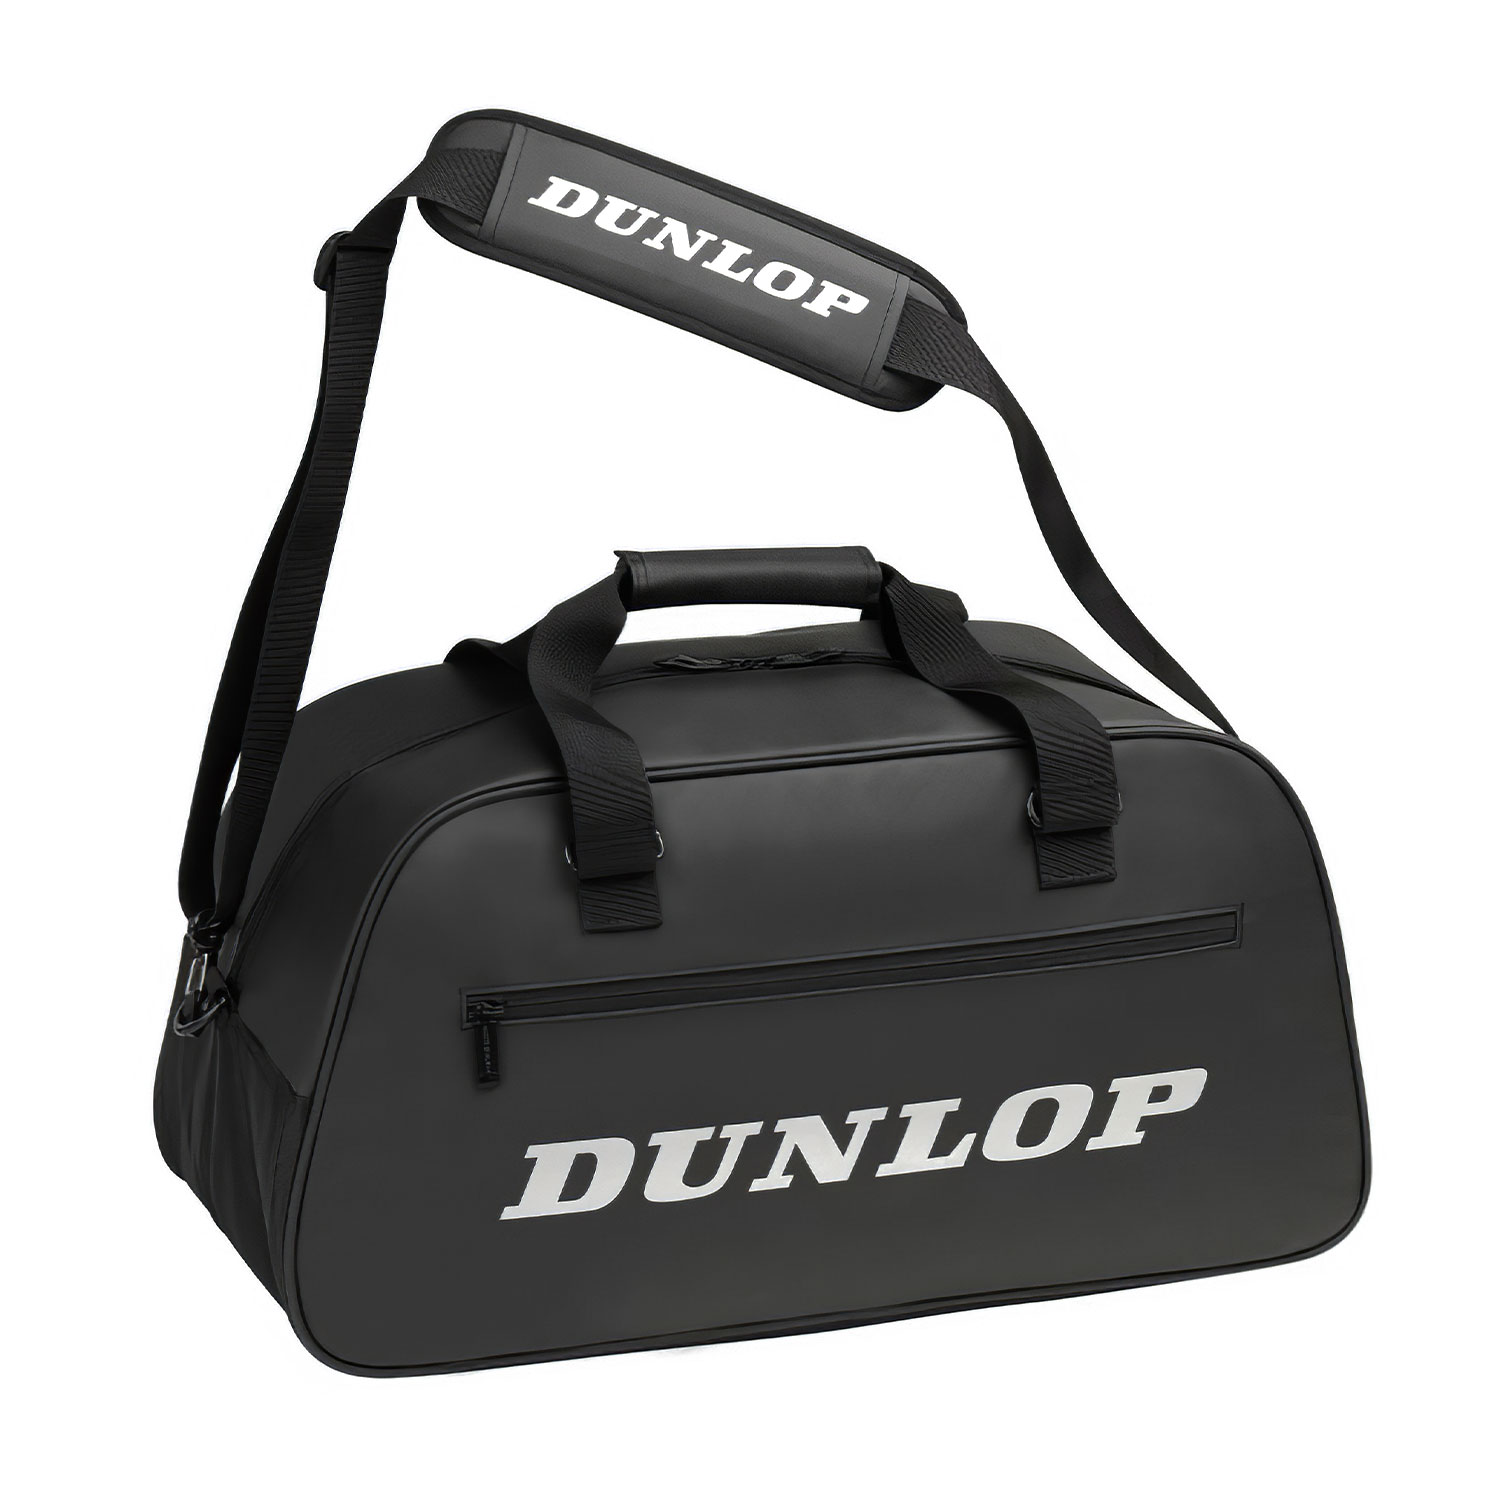 Dunlop Pro Bag - Black